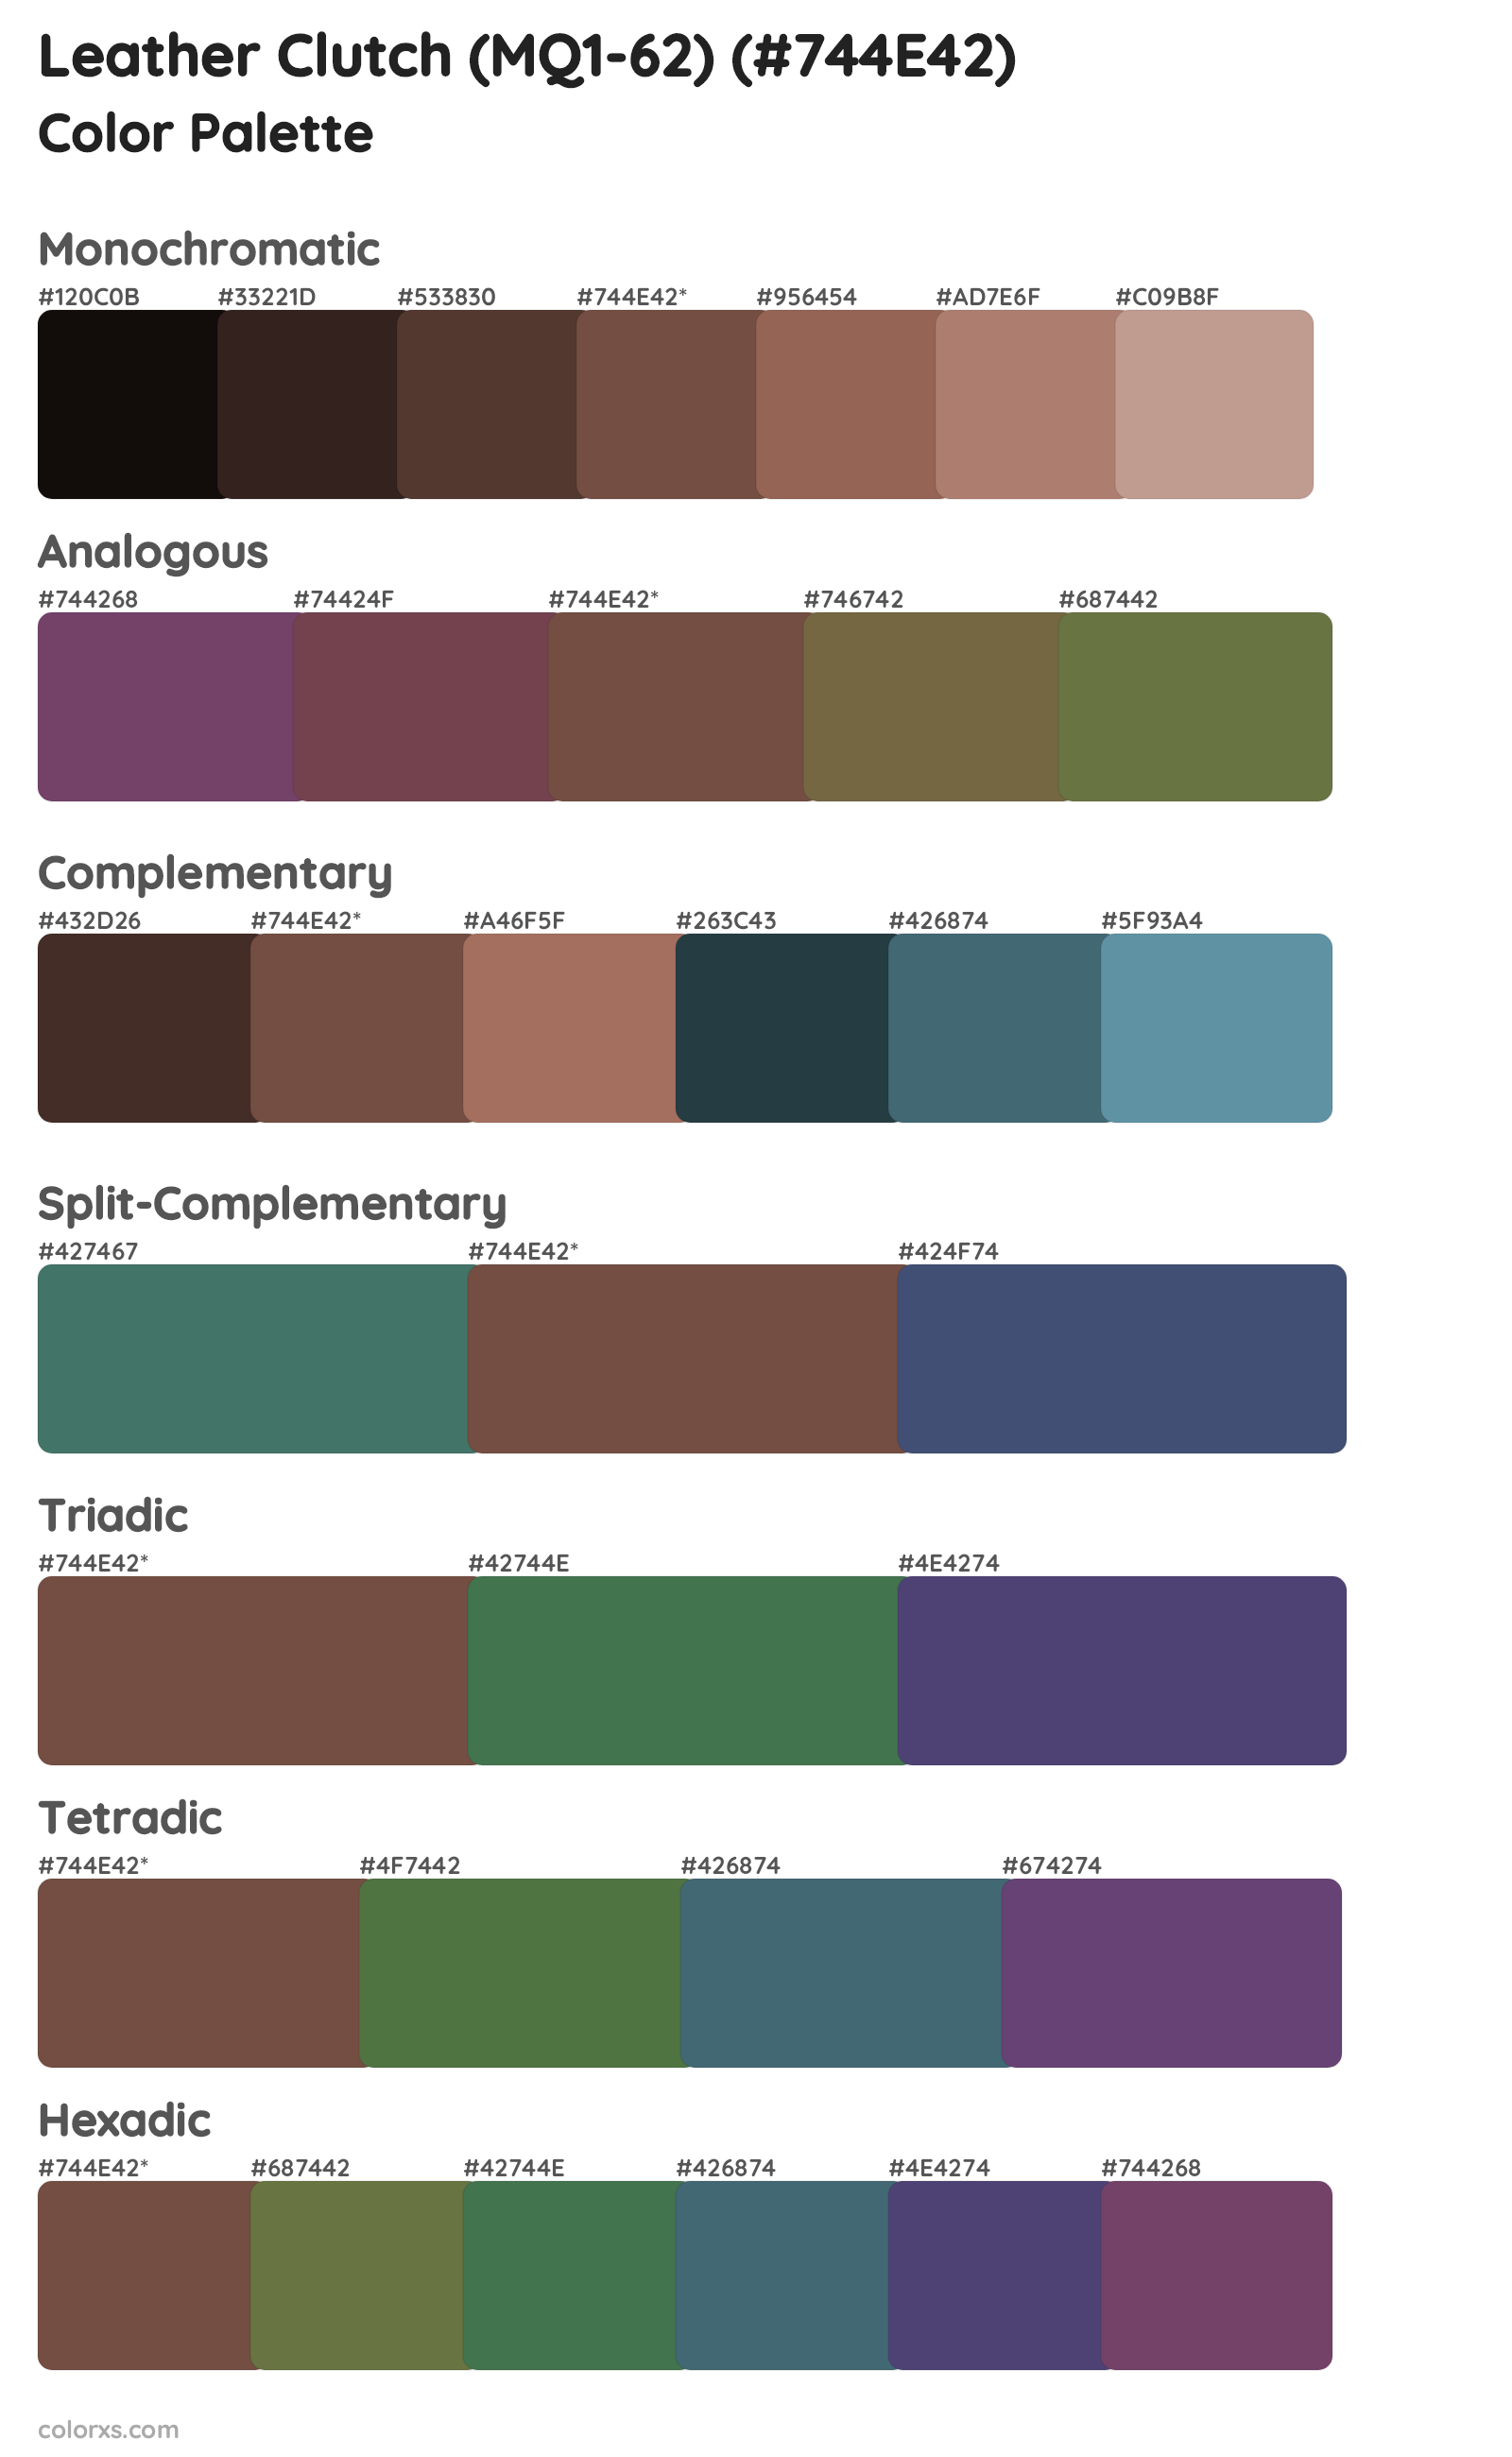 Leather Clutch (MQ1-62) Color Scheme Palettes